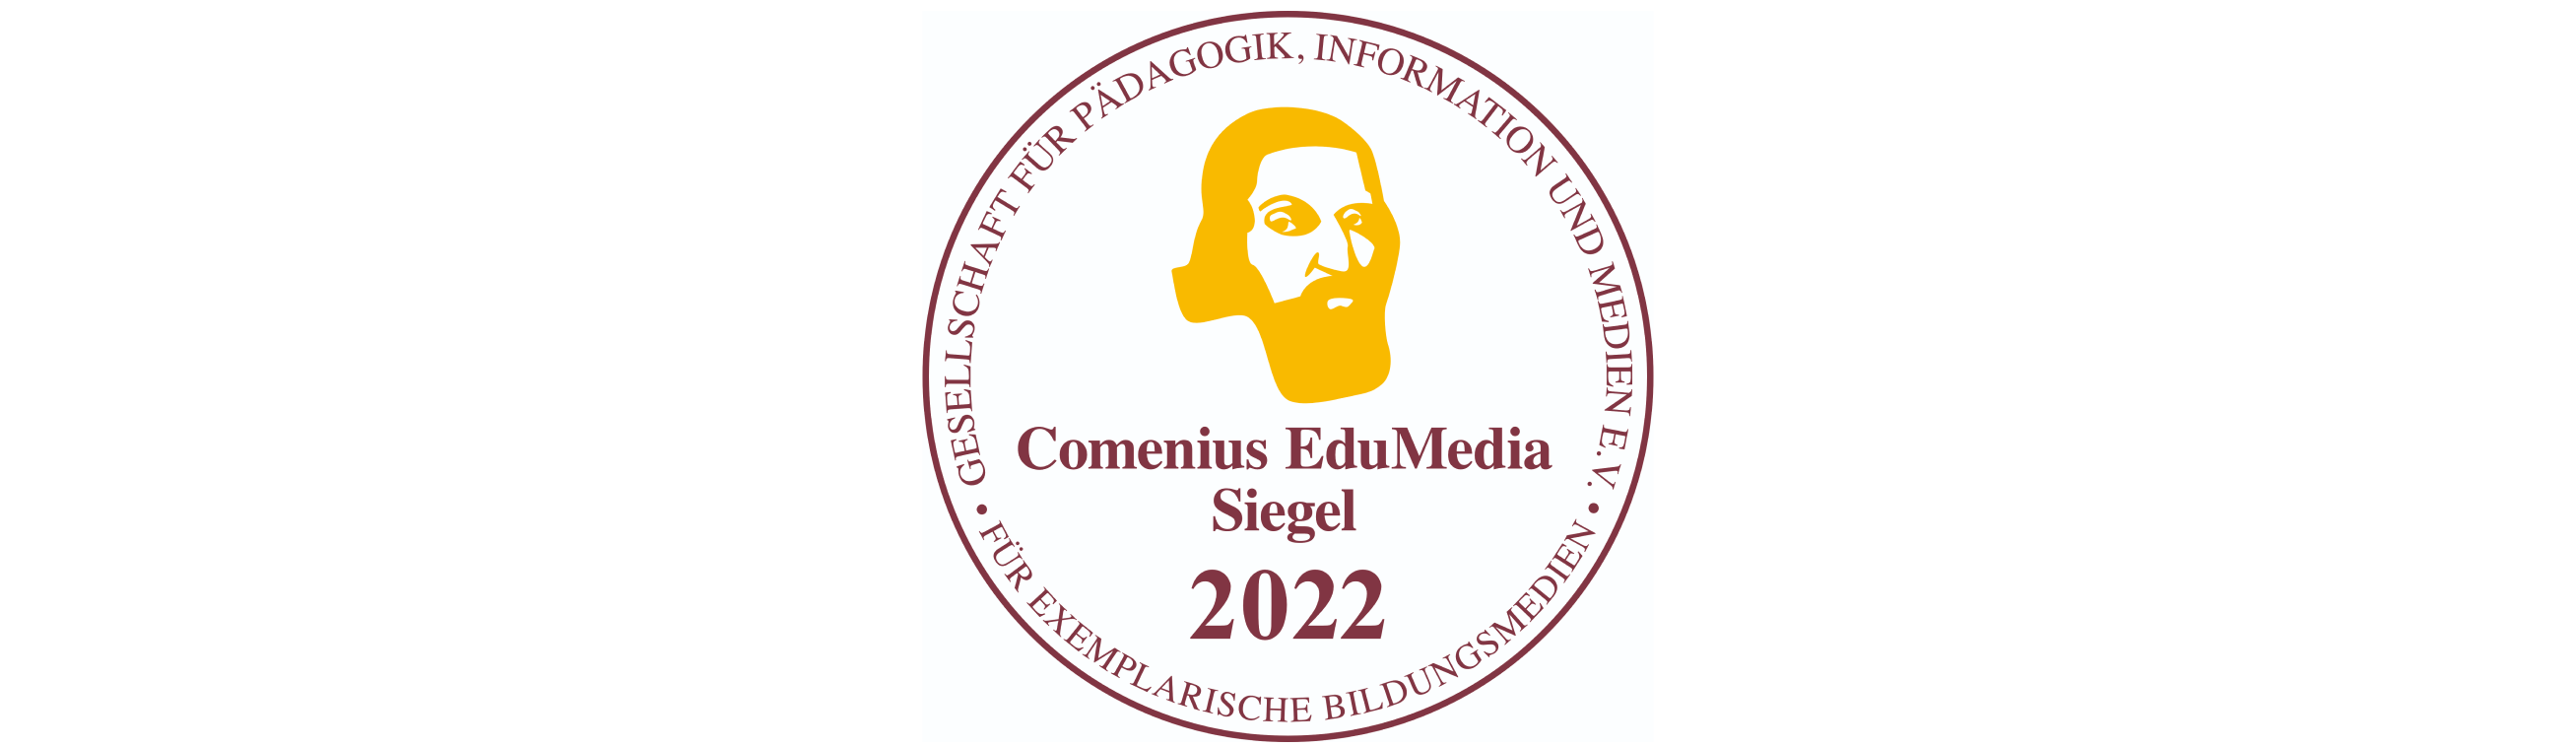 Comenius EduMedia Siegel 2022 für exemplarische Bildungsmedien der Gesellschat für Pädagogik, Information und Medien e.V.